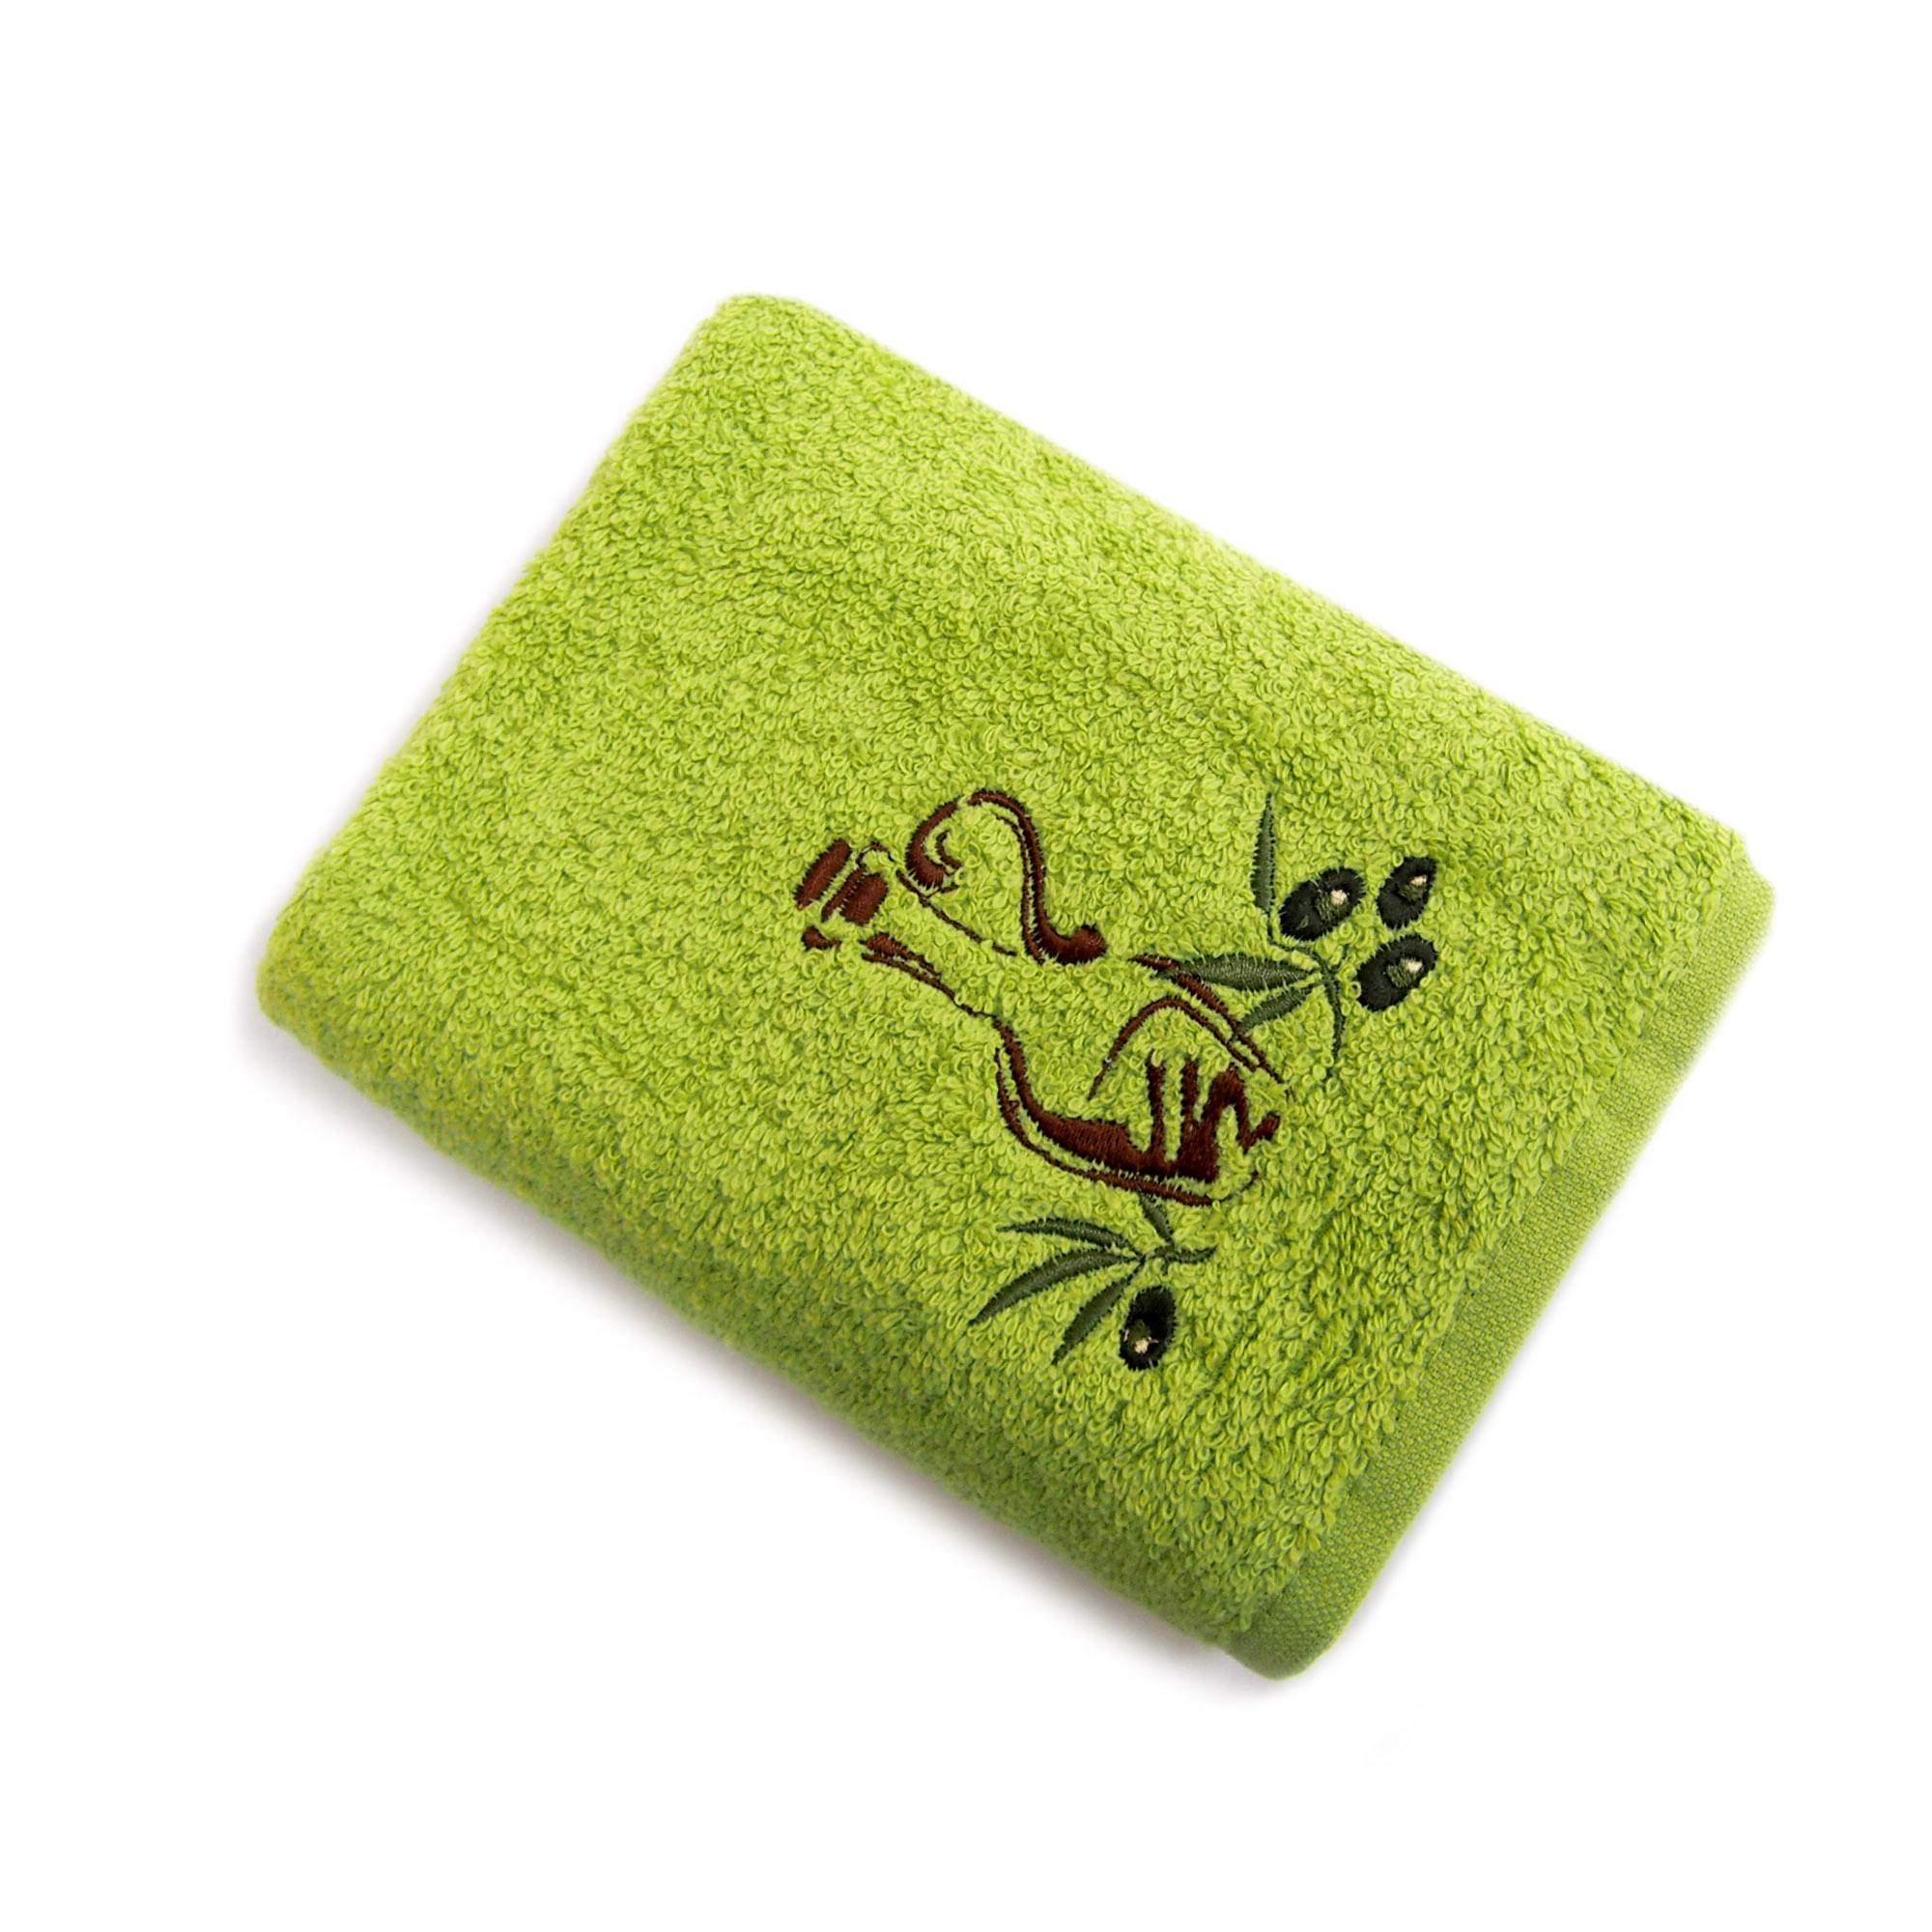 Ашан полотенца. La prima полотенца. Зеленый Прима. Полотенце Auchan. Кухонное салатовое полотенце с головой кролика.